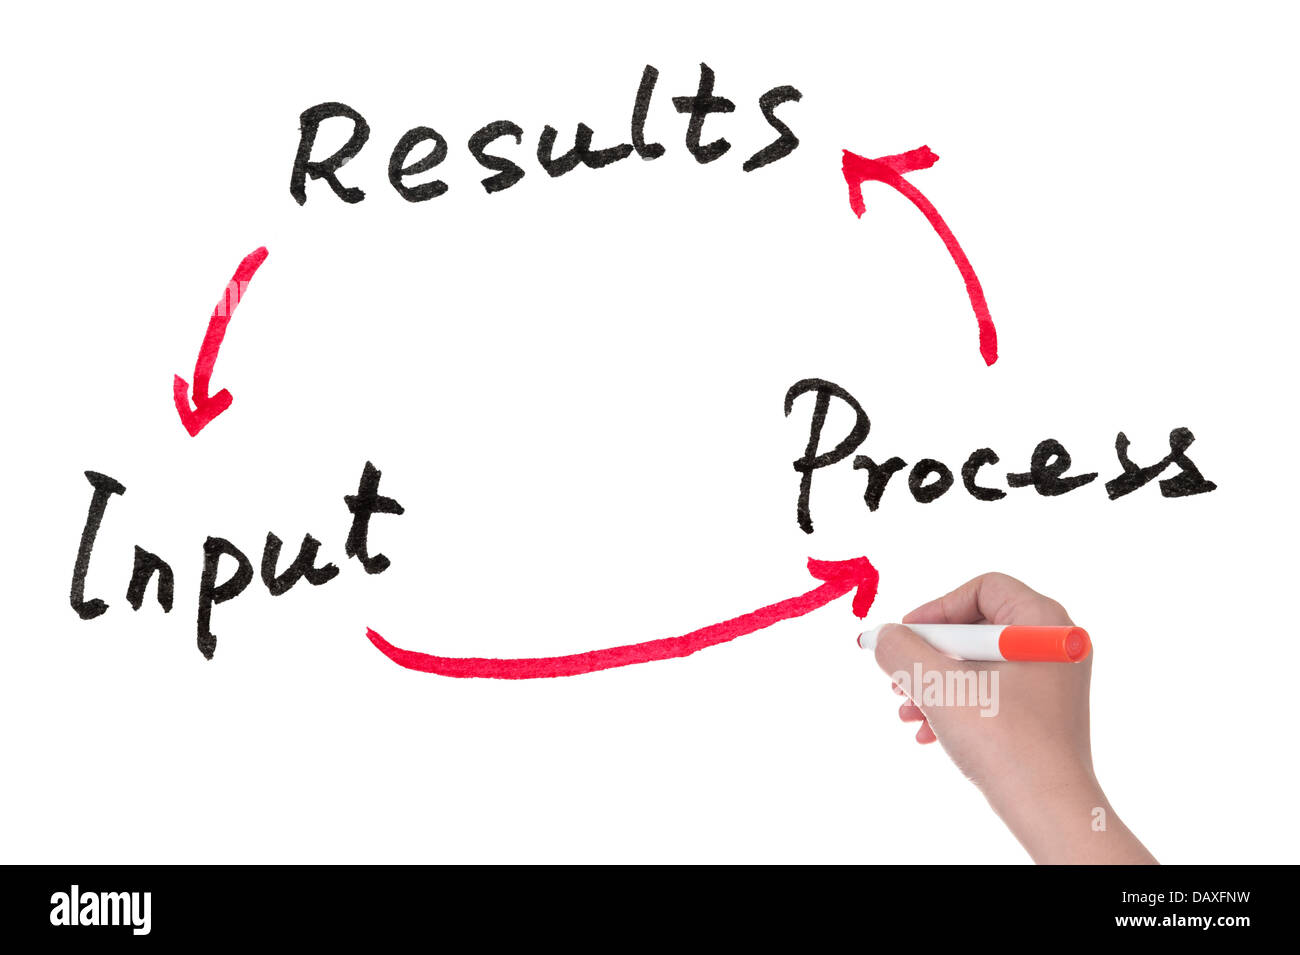 Ciclo de entrada, de proceso y de resultados concepto dibujado en una pizarra blanca Foto de stock